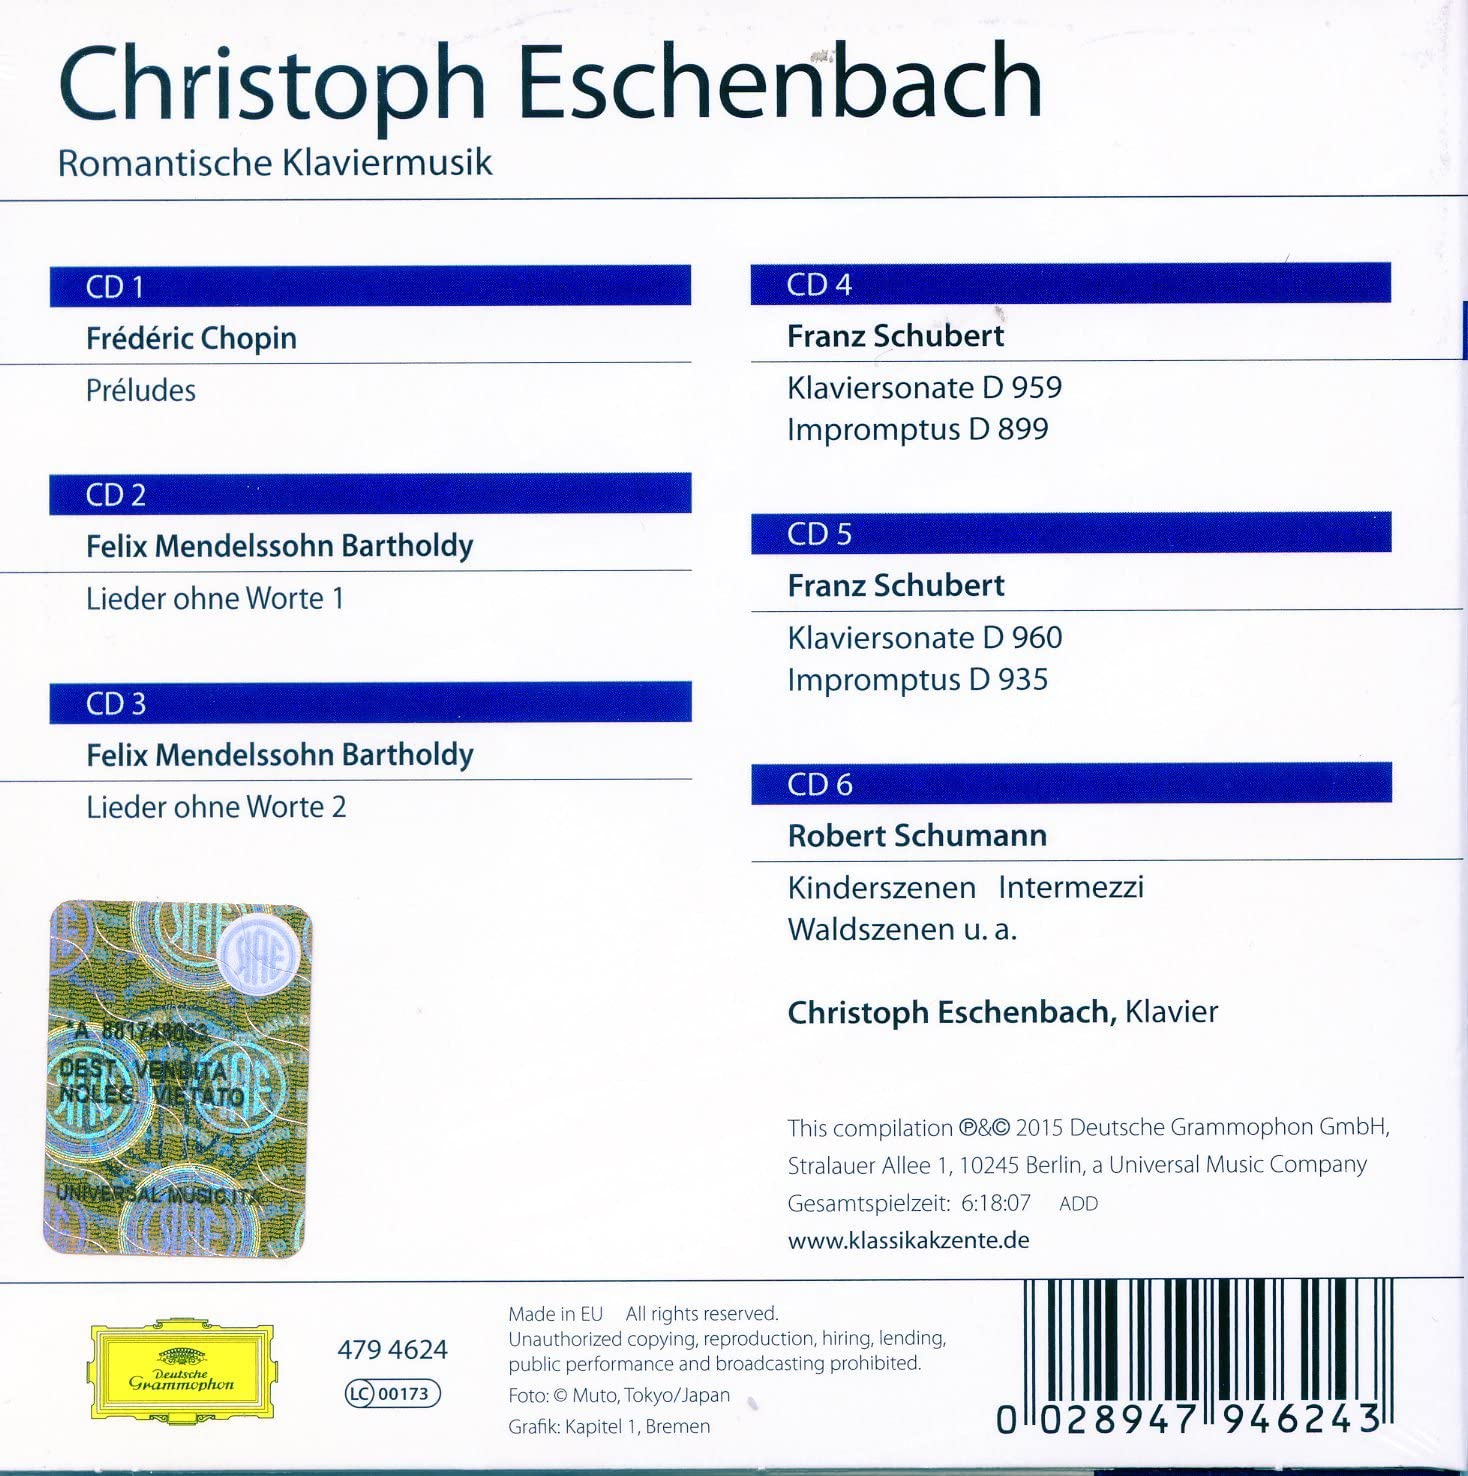 Christoph Eschenbach - Romantische Klaviermusik (2015)